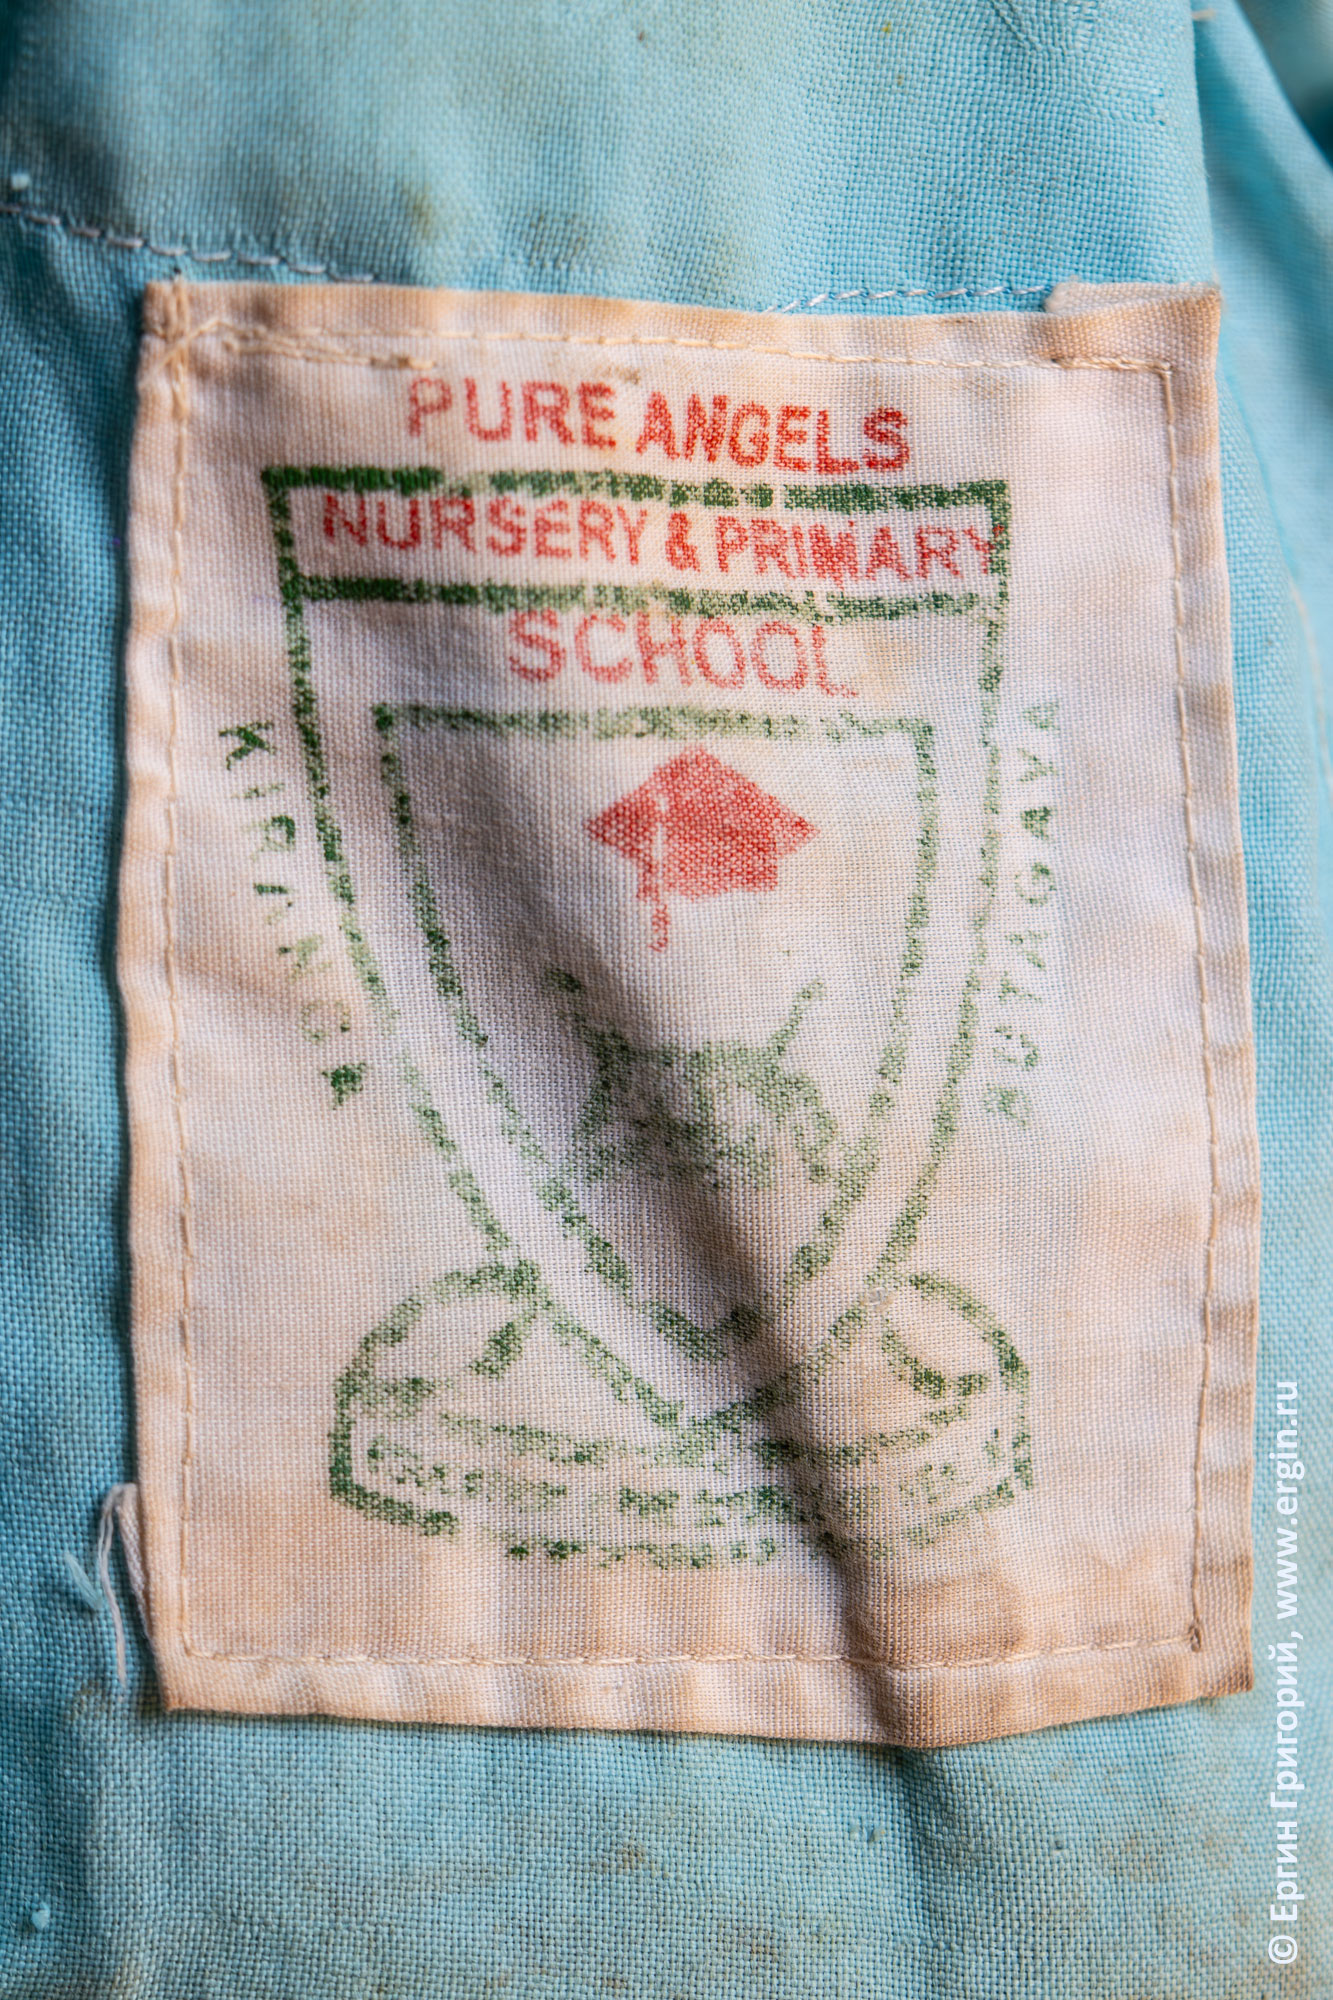 Эмблема угандийской школы "Pure Angels"